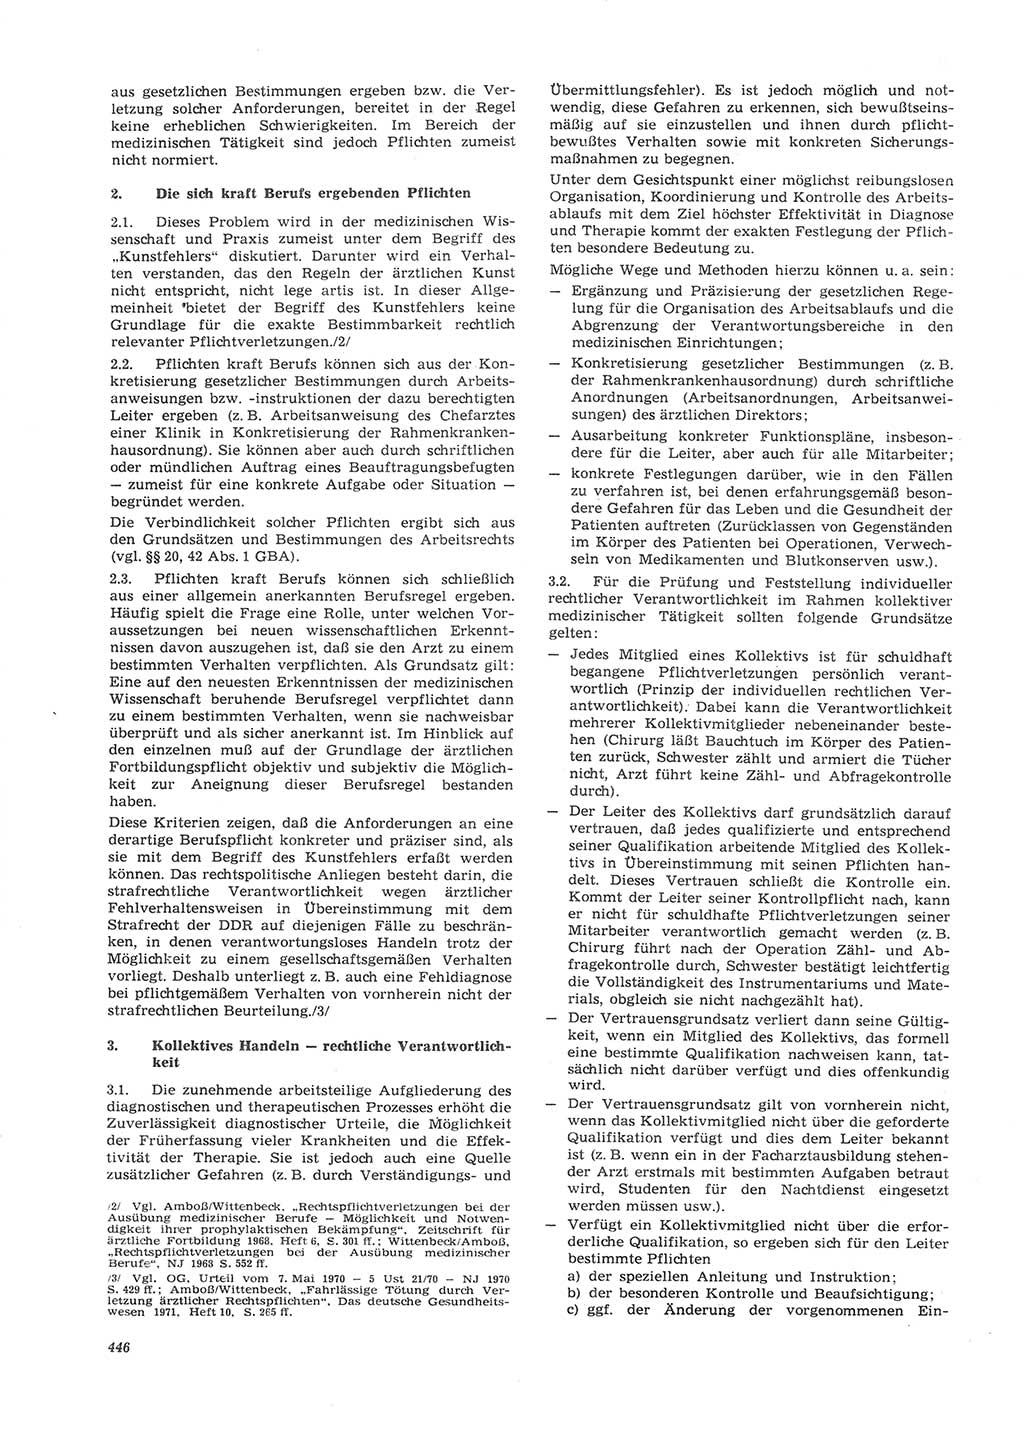 Neue Justiz (NJ), Zeitschrift für Recht und Rechtswissenschaft [Deutsche Demokratische Republik (DDR)], 26. Jahrgang 1972, Seite 446 (NJ DDR 1972, S. 446)